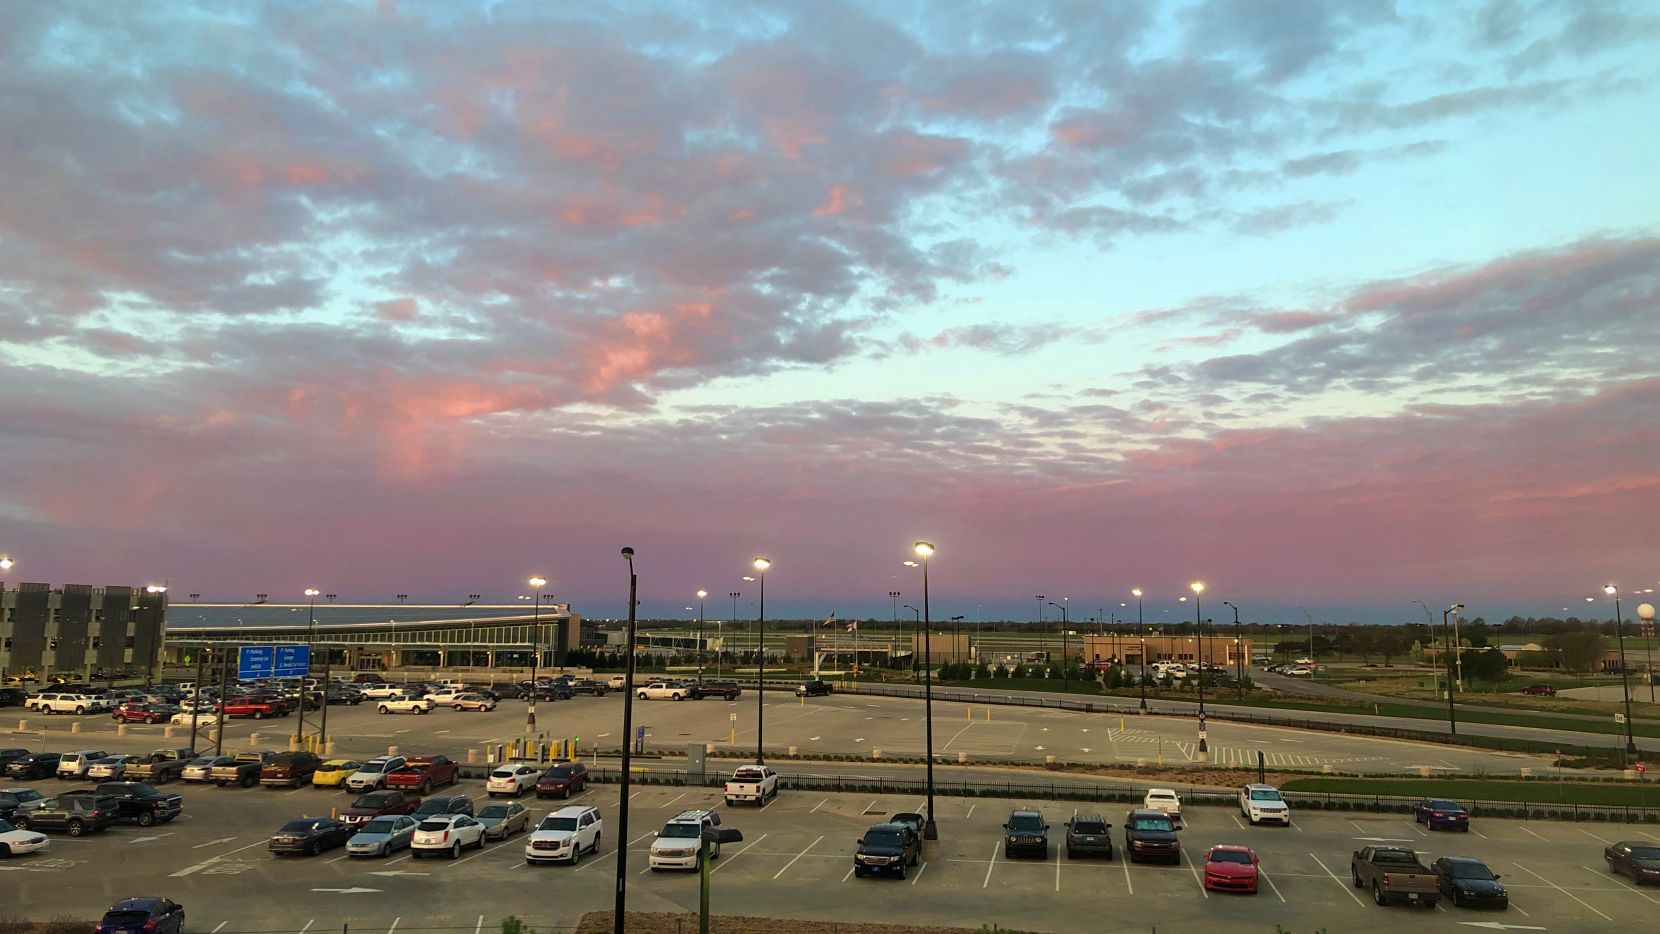 Wichita (ICT) terminal at sunset.